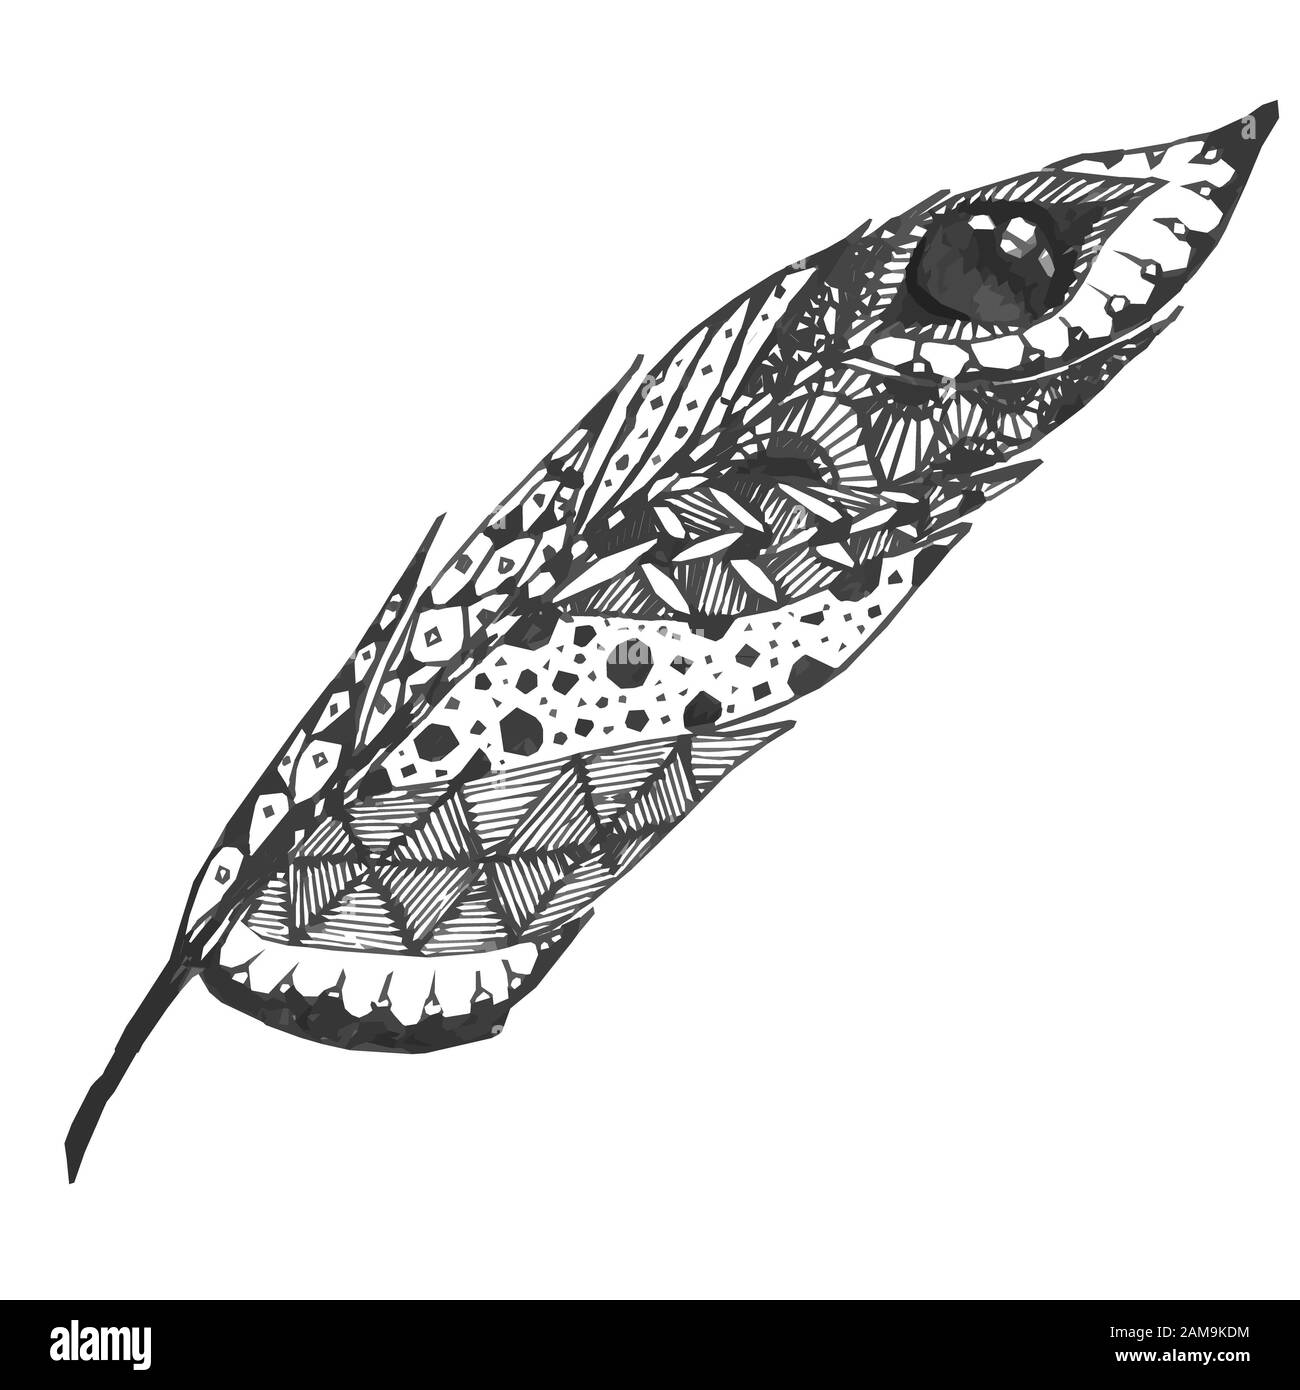 Disegnata a mano doodle zentangle feather isolato da sfondo. Bianco e nero illustrazione con diversi ornamenti. Foto Stock